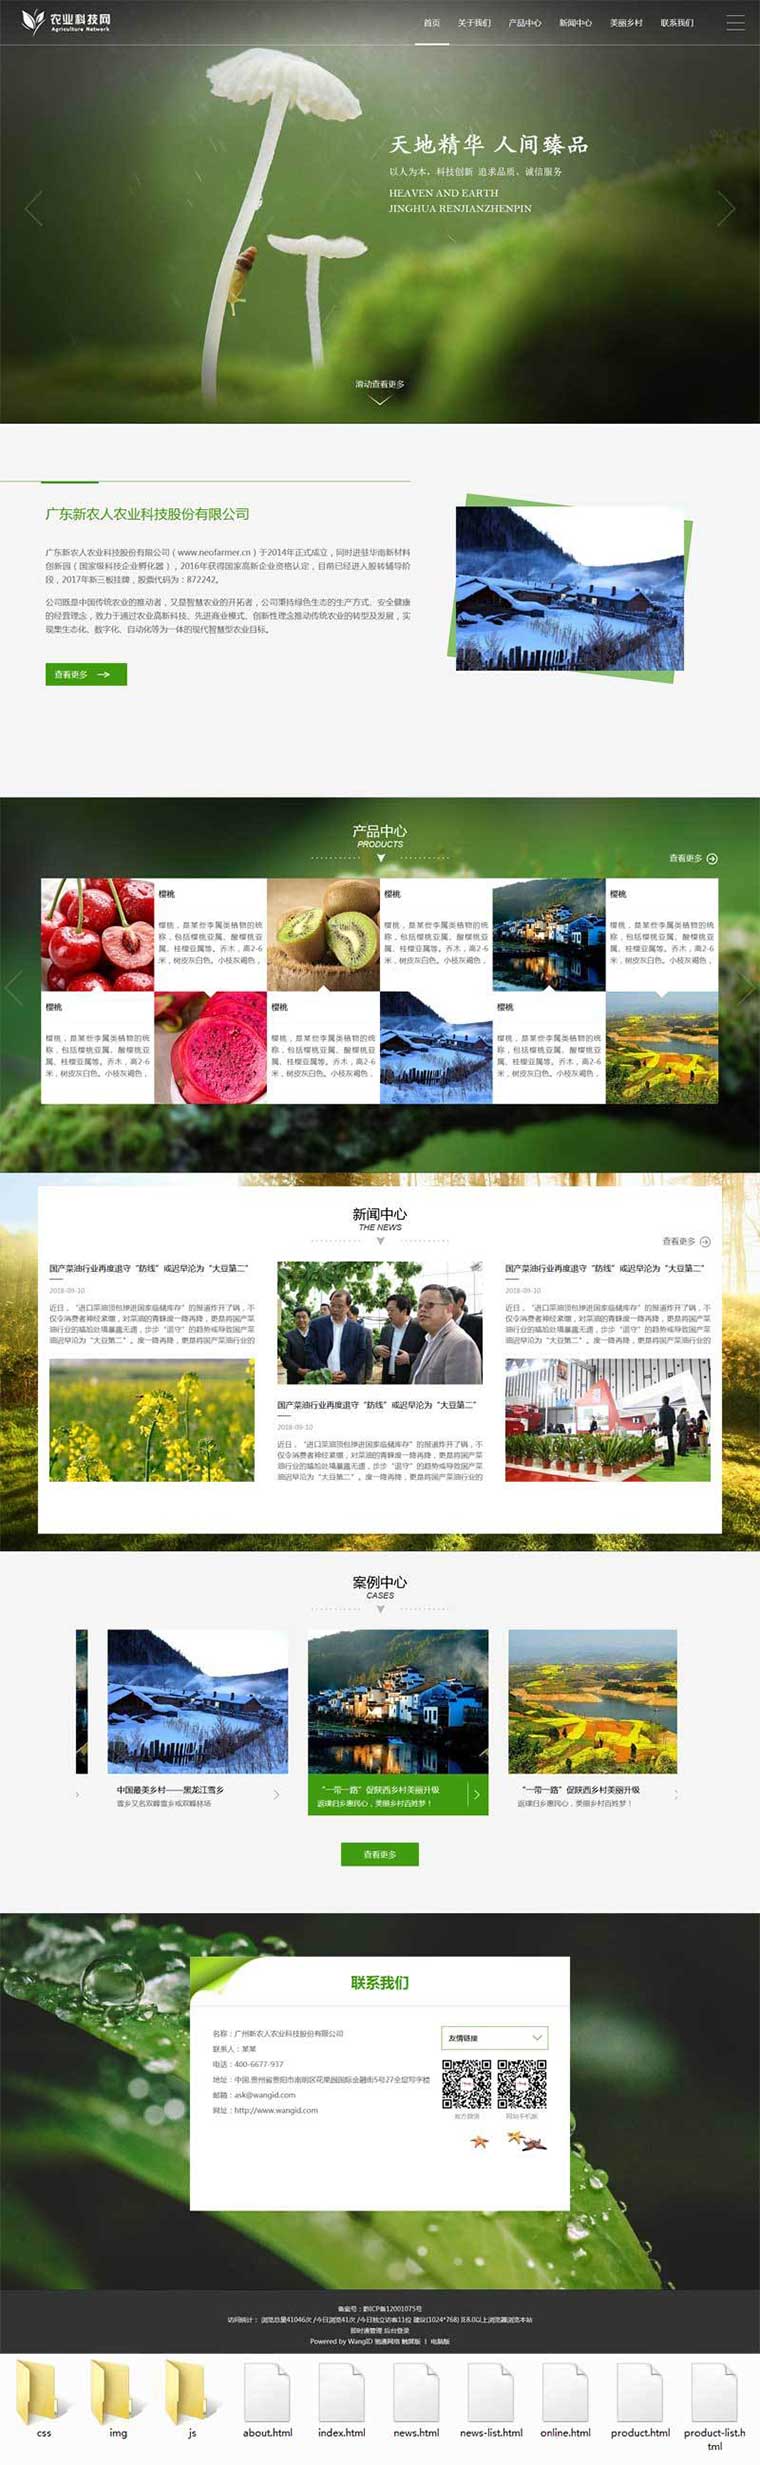 绿色宽屏大气的农业科技自动化生产企业网站模板